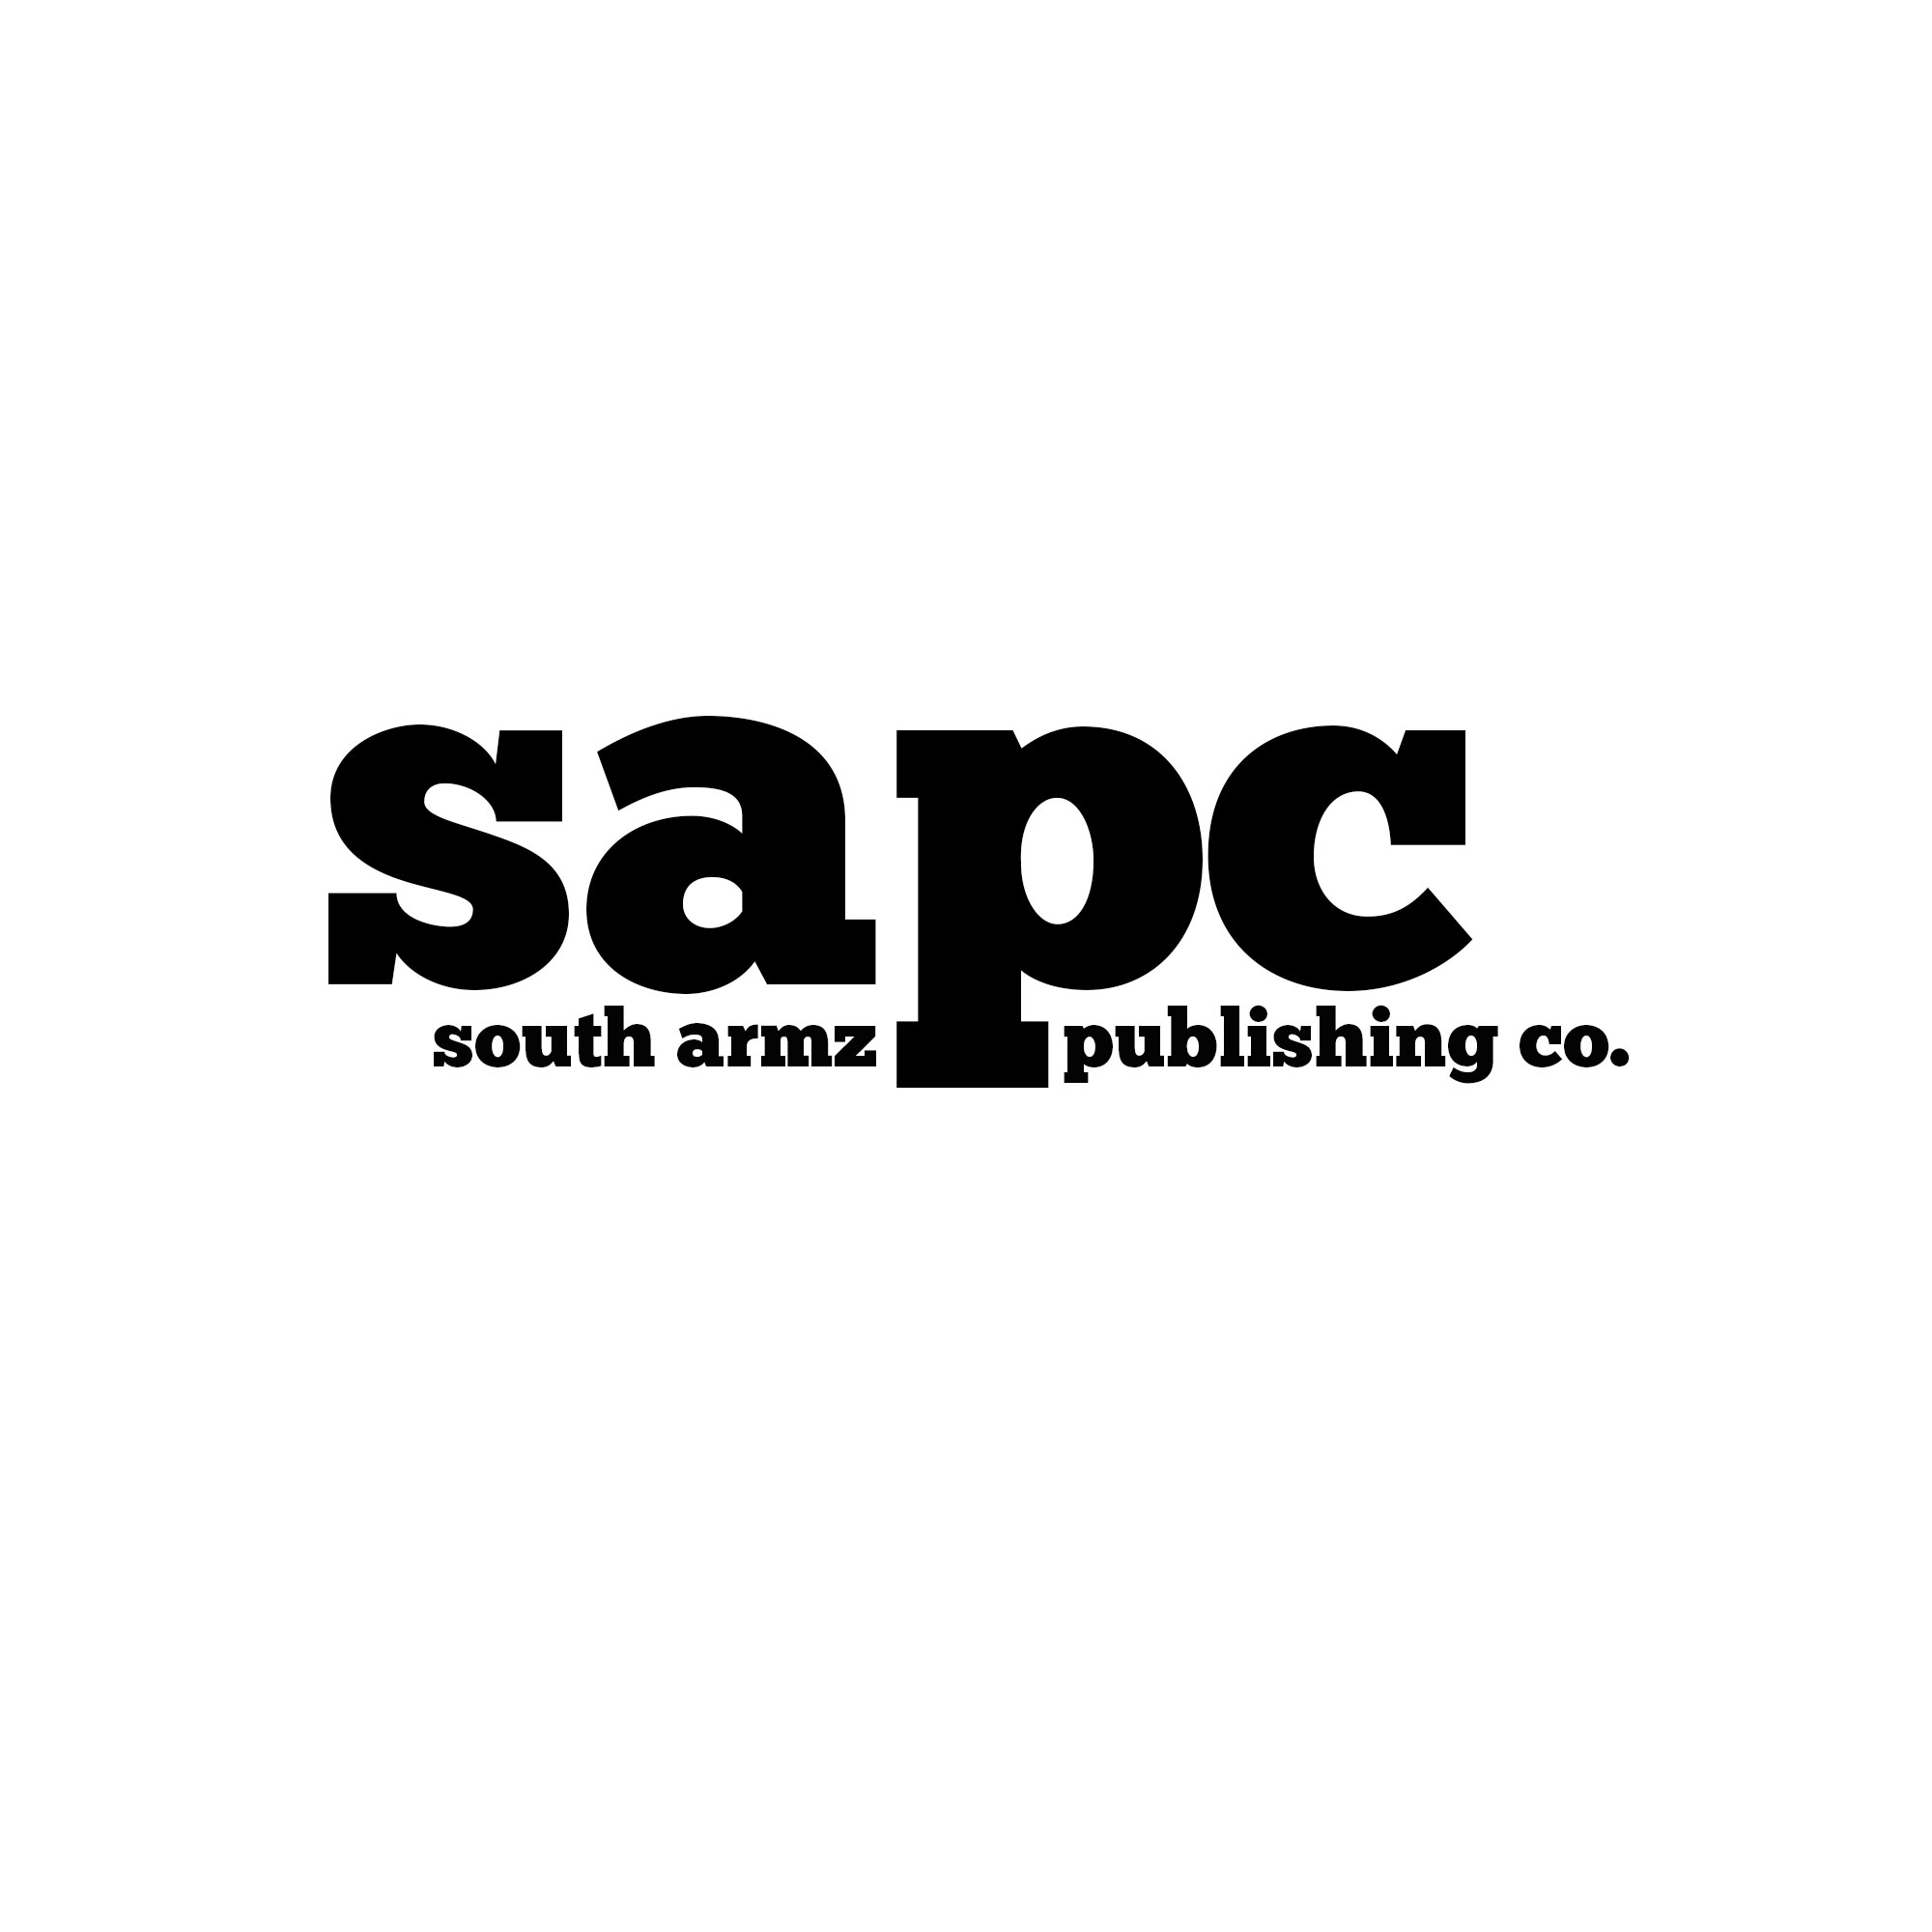 South Armz Publishing Company